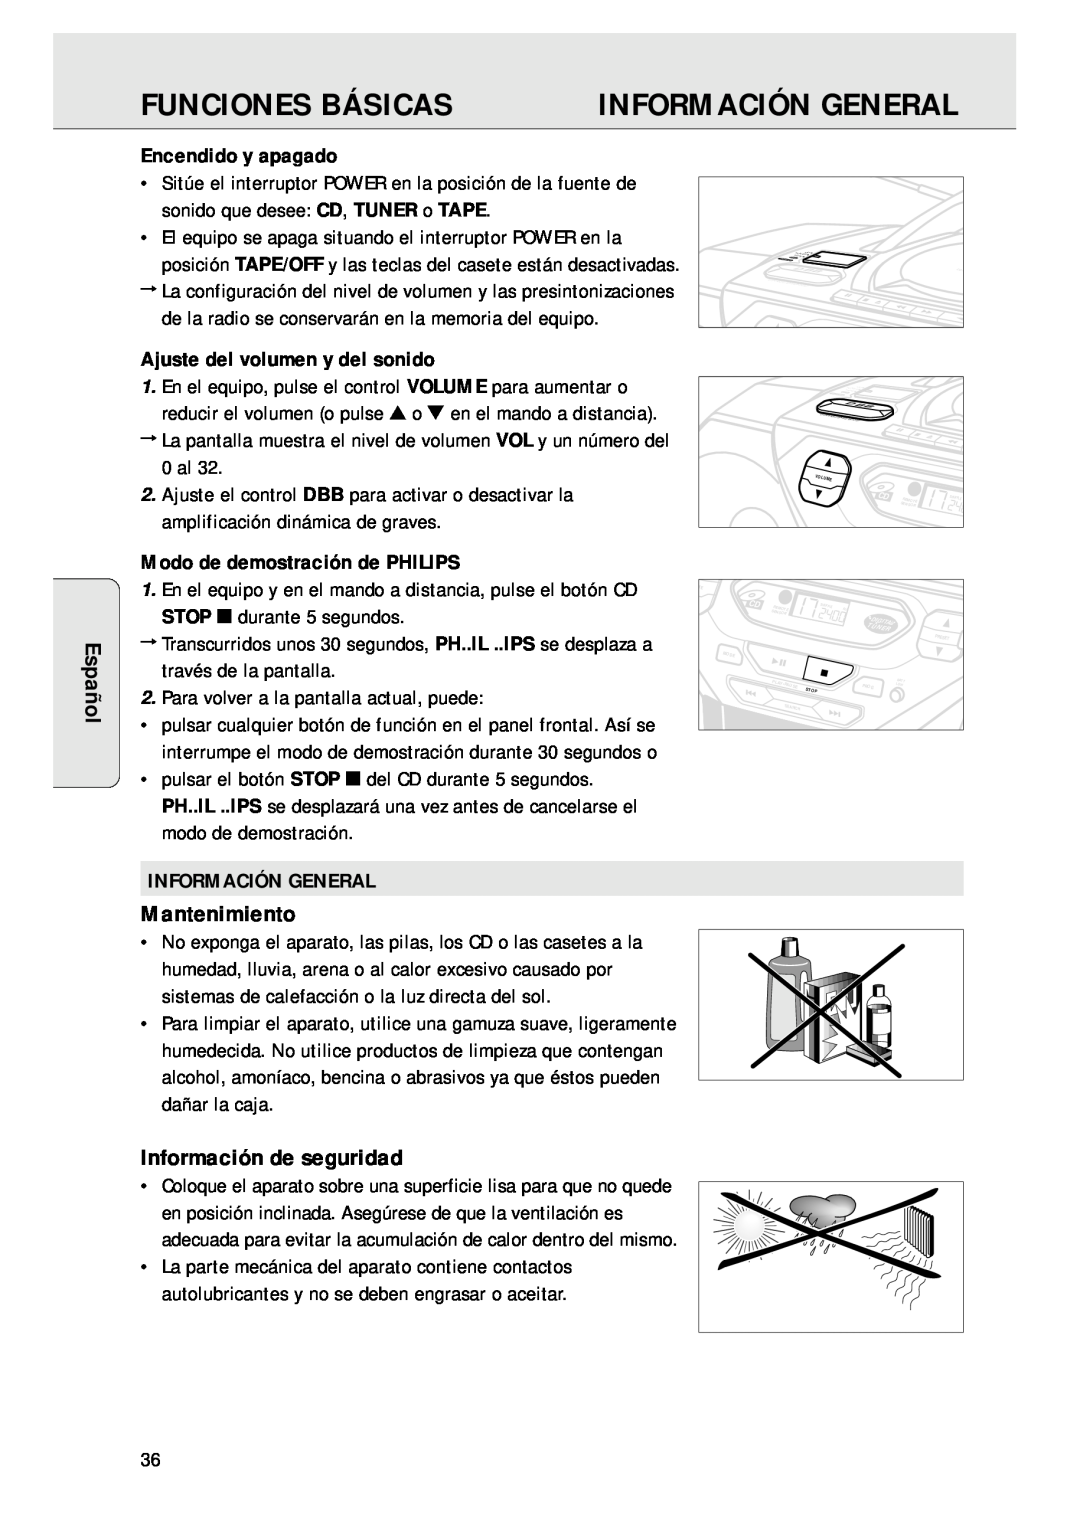 Magnavox AZ 1045 manual Funciones Básicas, Información General, Mantenimiento, Información de seguridad, Español 